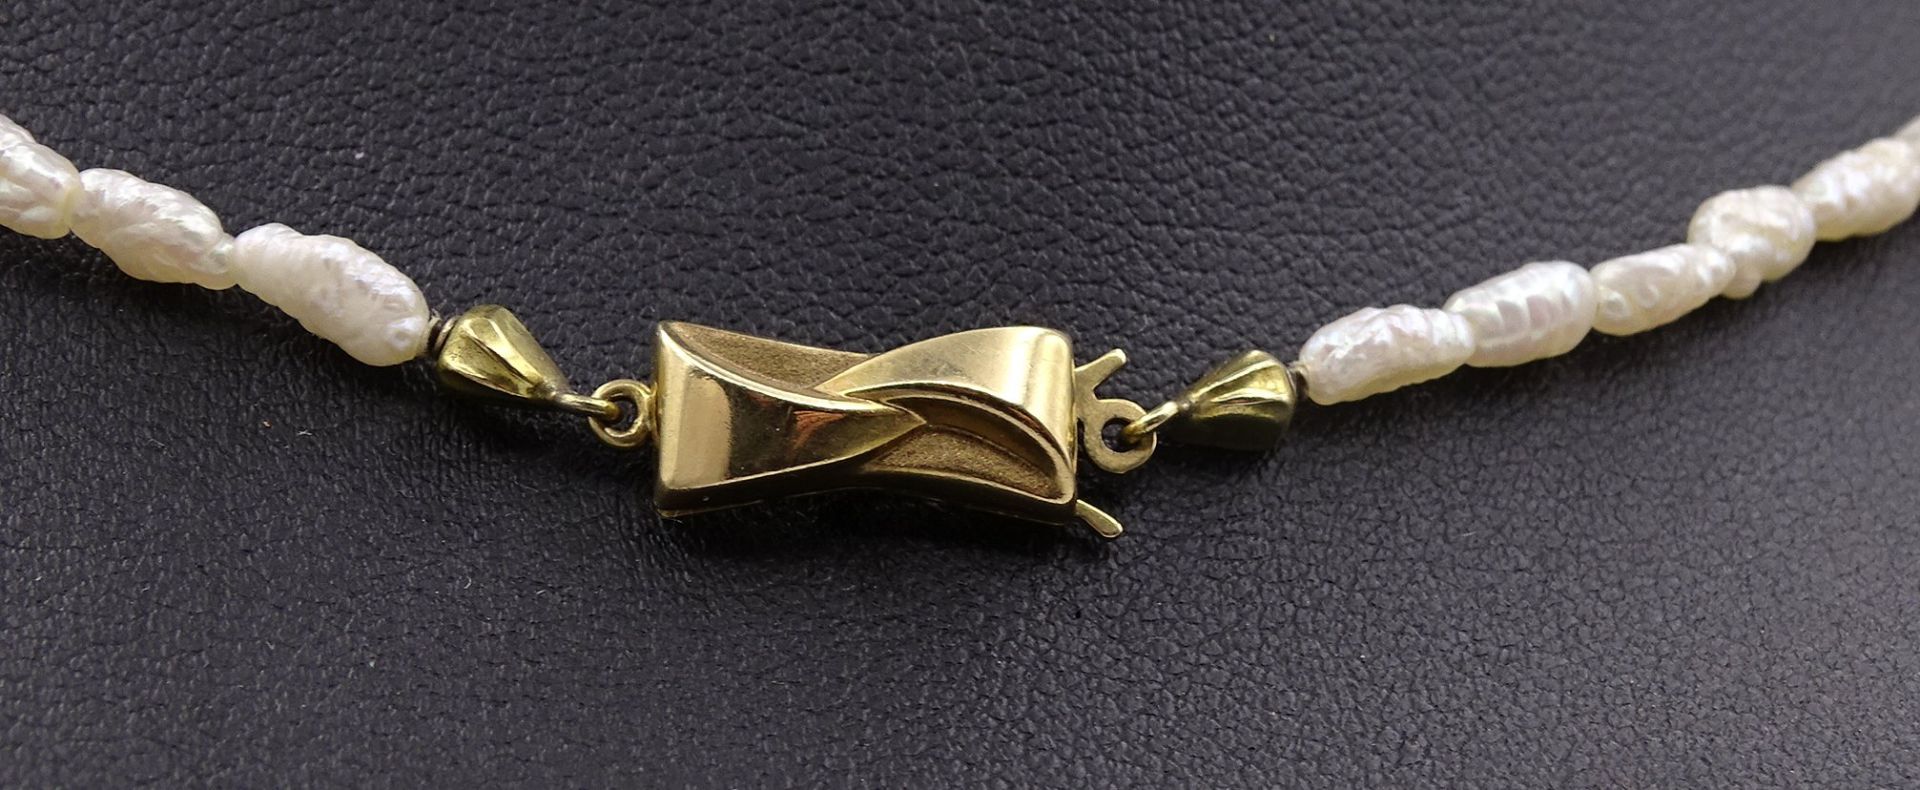 SW - Perlen Halskette mit Goldverschluss 375/000, L. 41cm - Image 2 of 6